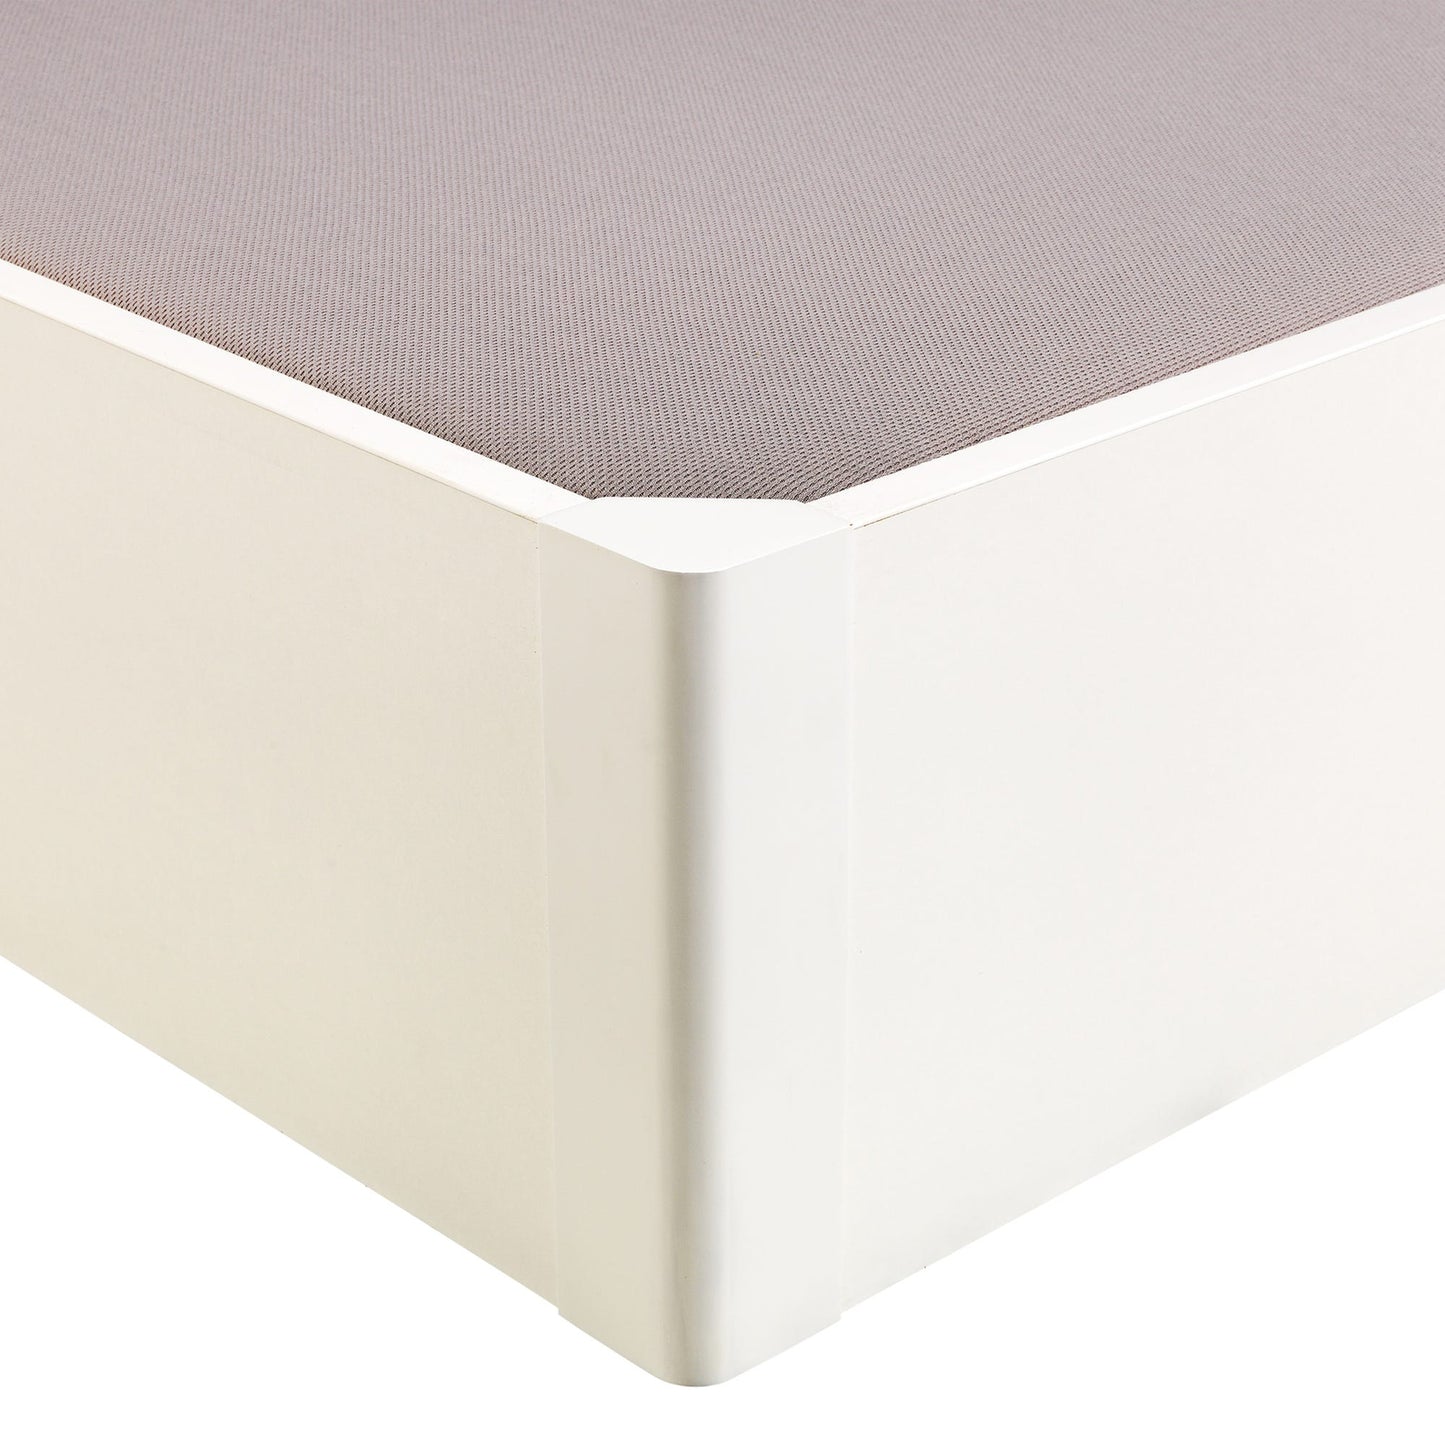 Canapé abatible de madera tapa única de color blanco - DESIGN - 105x182